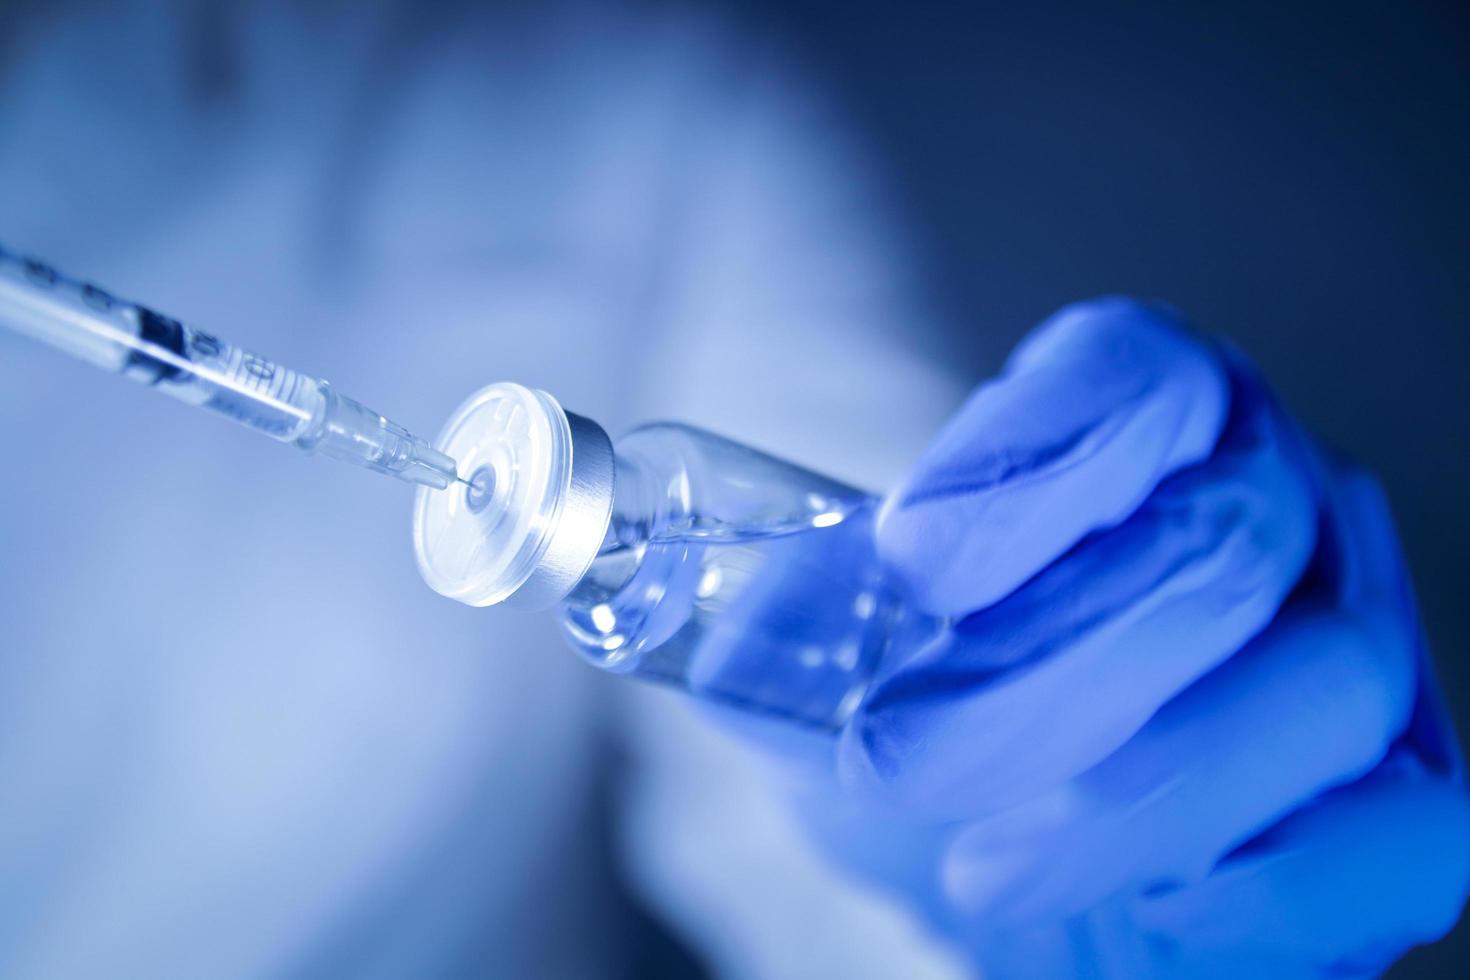 médicos ou cientistas seguram seringas e frascos com a vacina covid-19 para tentar injeções para tratar pacientes em hospitais. experimentos médicos impedem a propagação do coronavírus foto